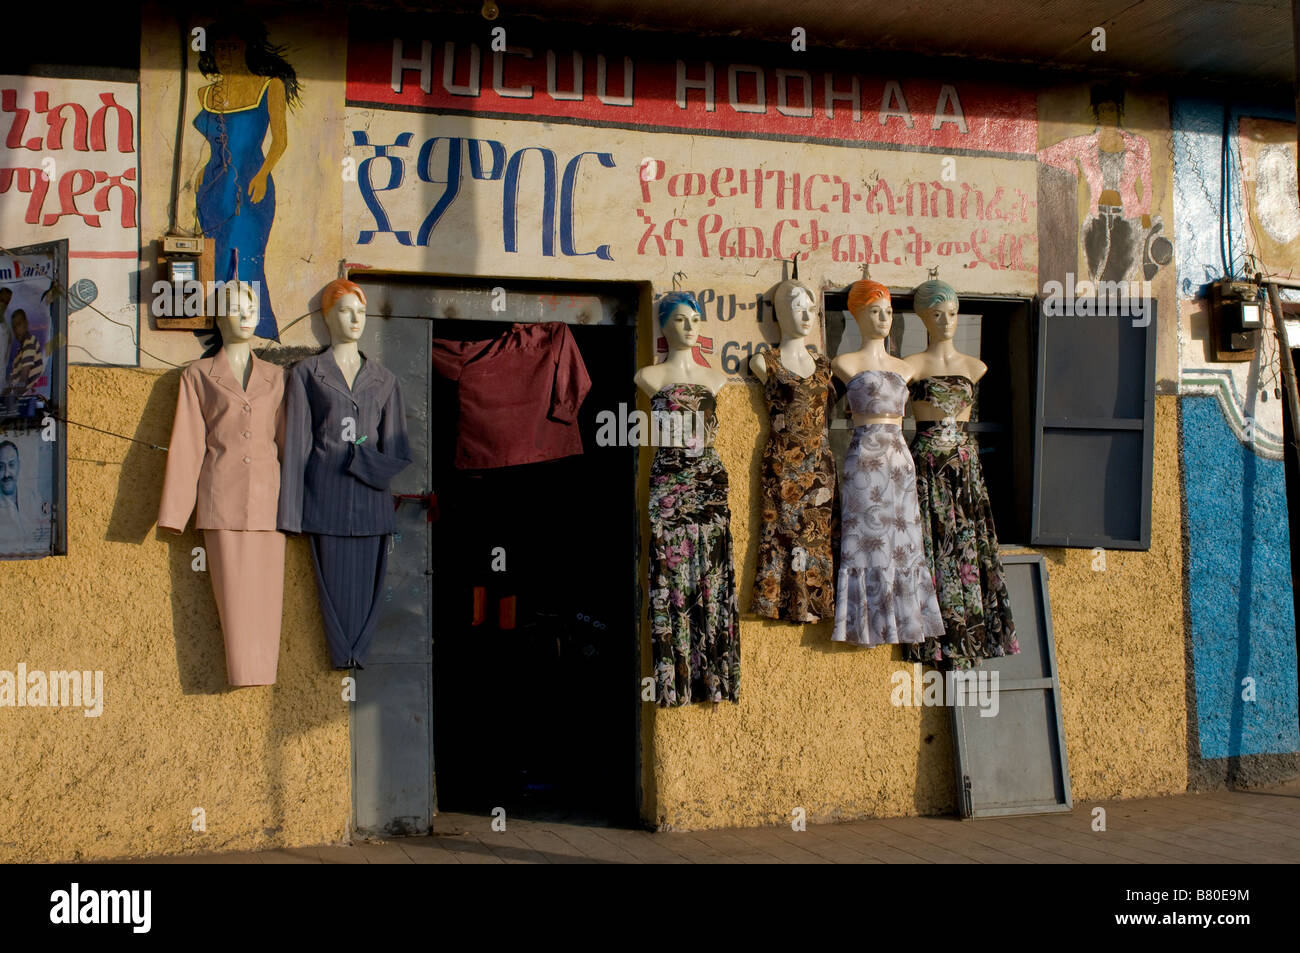 Tienda de ropa local Etiopía África Foto de stock